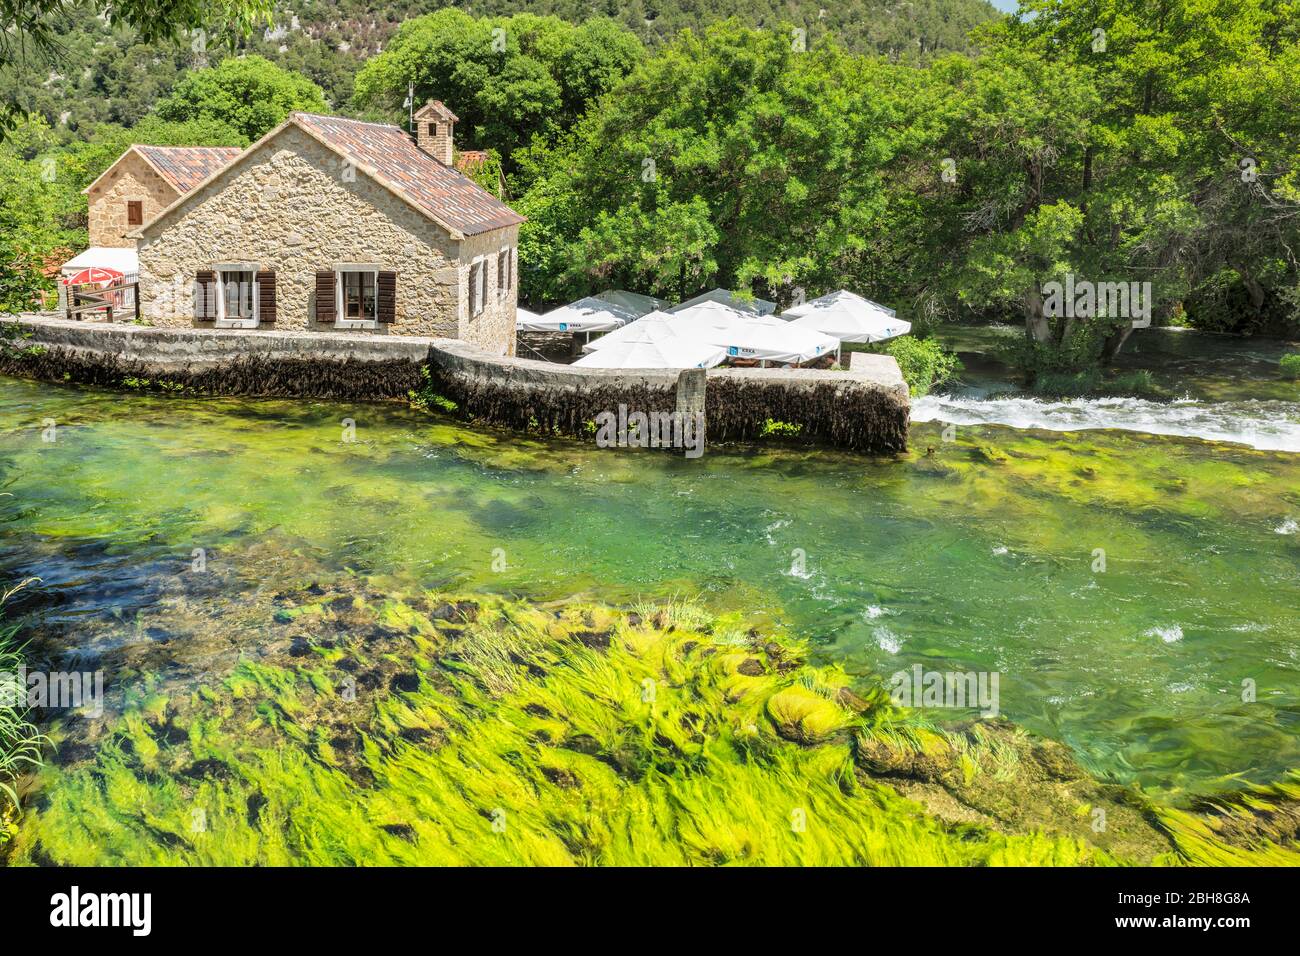 Restaurant und Cafe in einer ehemaligen Mühle, Nationalpark Krka, UNESCO Weltnaturerbe, Dalmatien, Kroatien Stock Photo